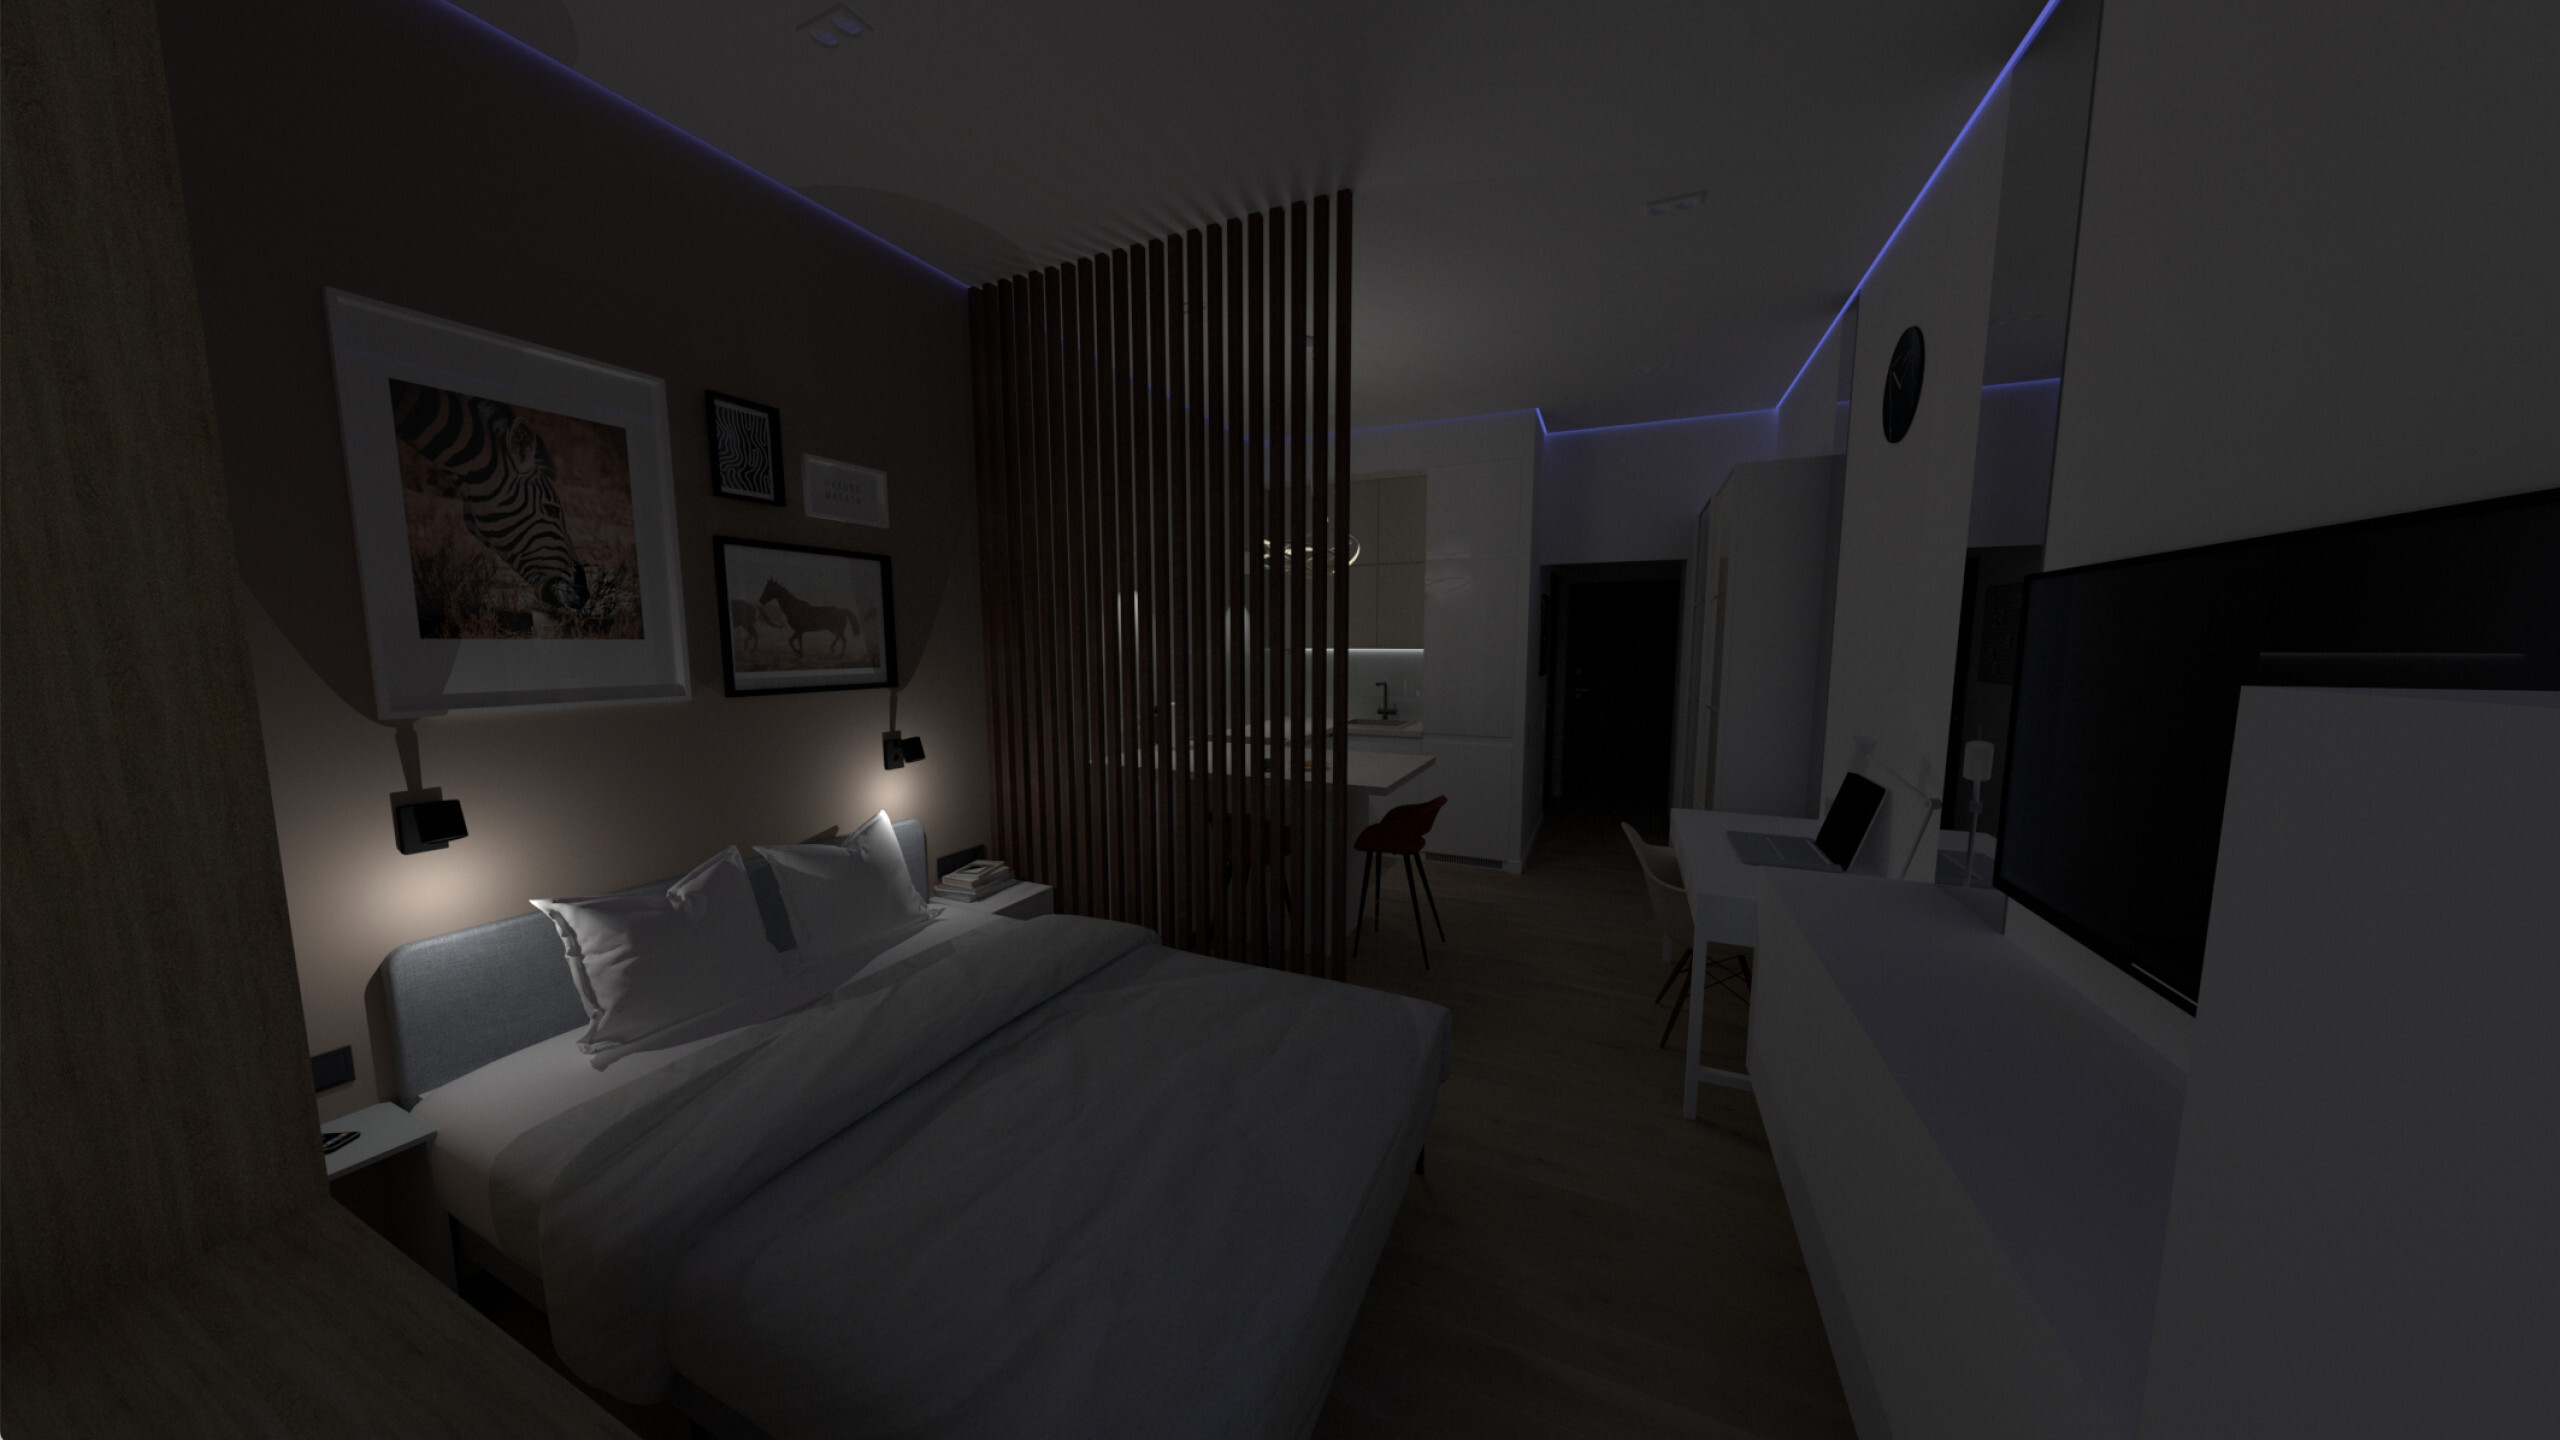 Интерьер спальни c рабочим местом, нишей с подсветкой, световыми линиями, рейками с подсветкой, подсветкой настенной, подсветкой светодиодной, светильниками над кроватью, подсветкой рабочей зоны и с подсветкой